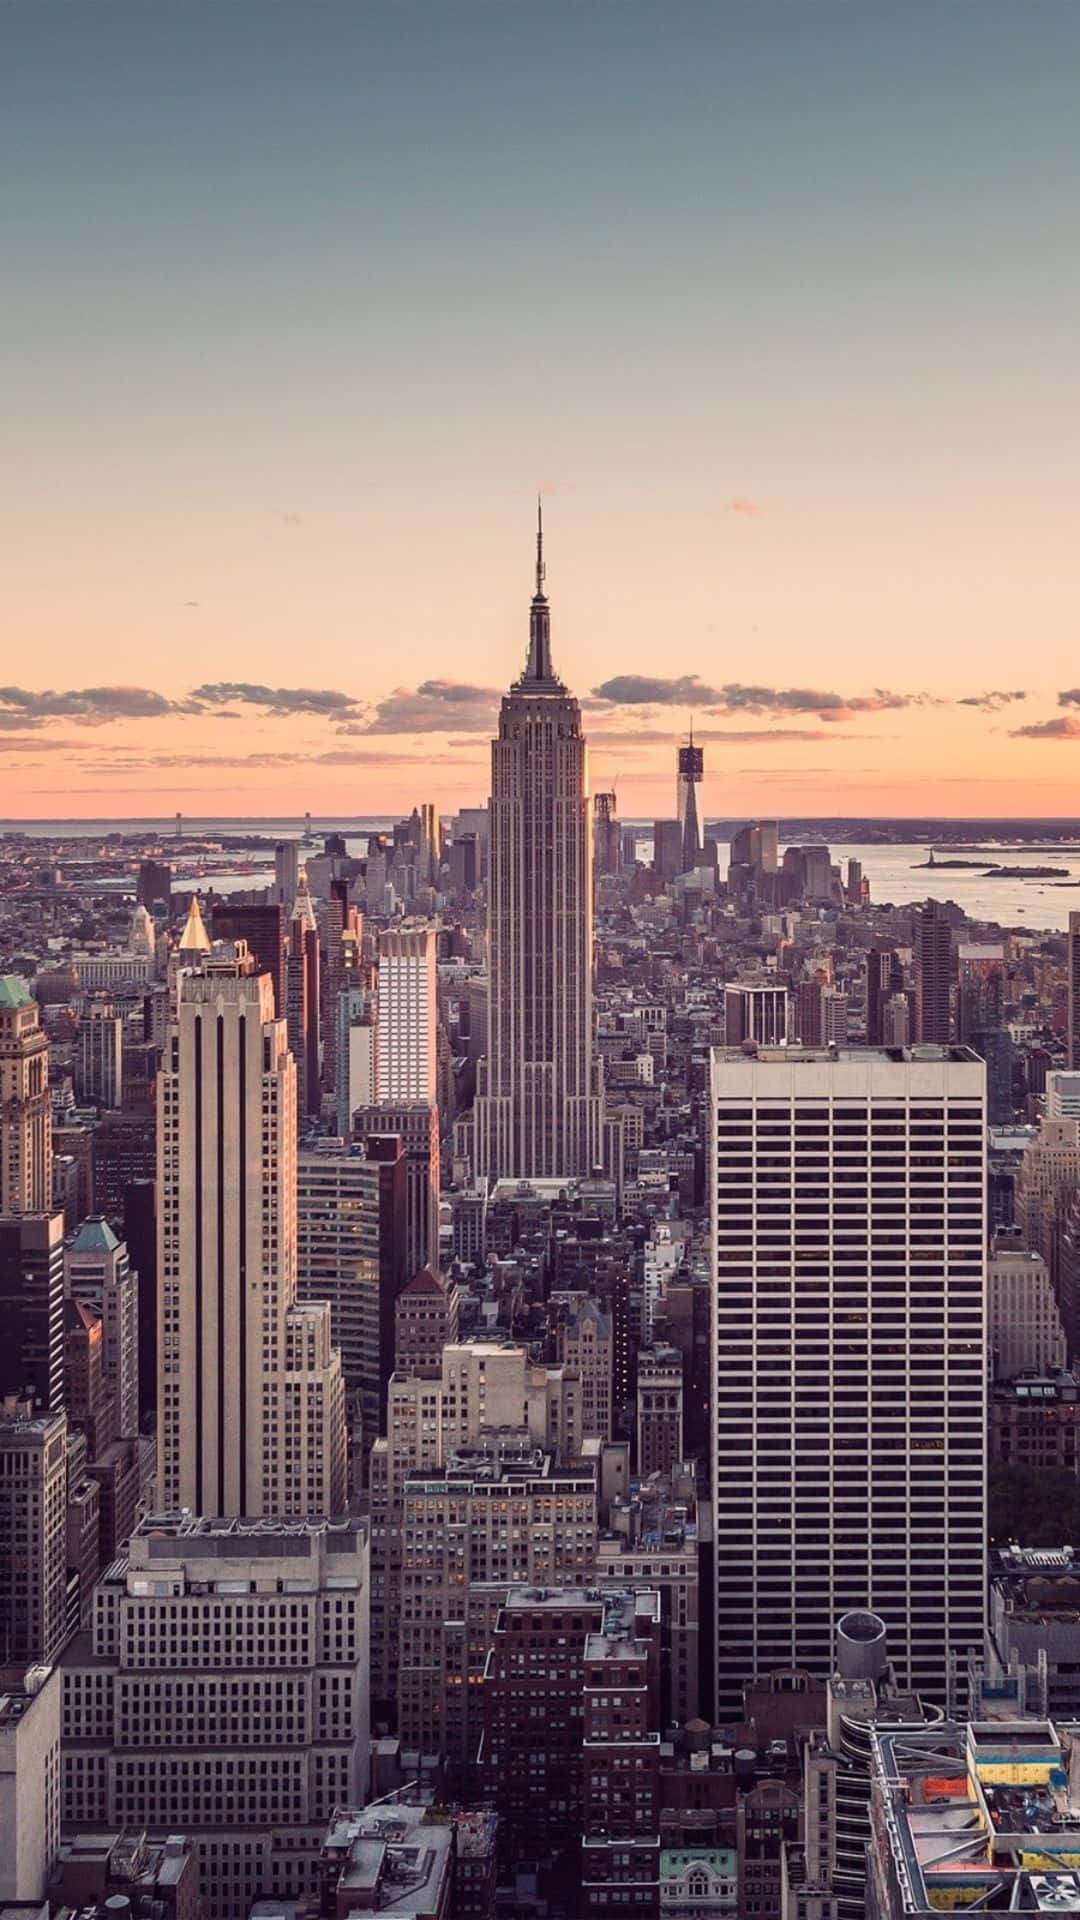 Fåen Glimt Av Android-världen Som Reser Sig Mitt I De Höga Skyskraporna I New York City.